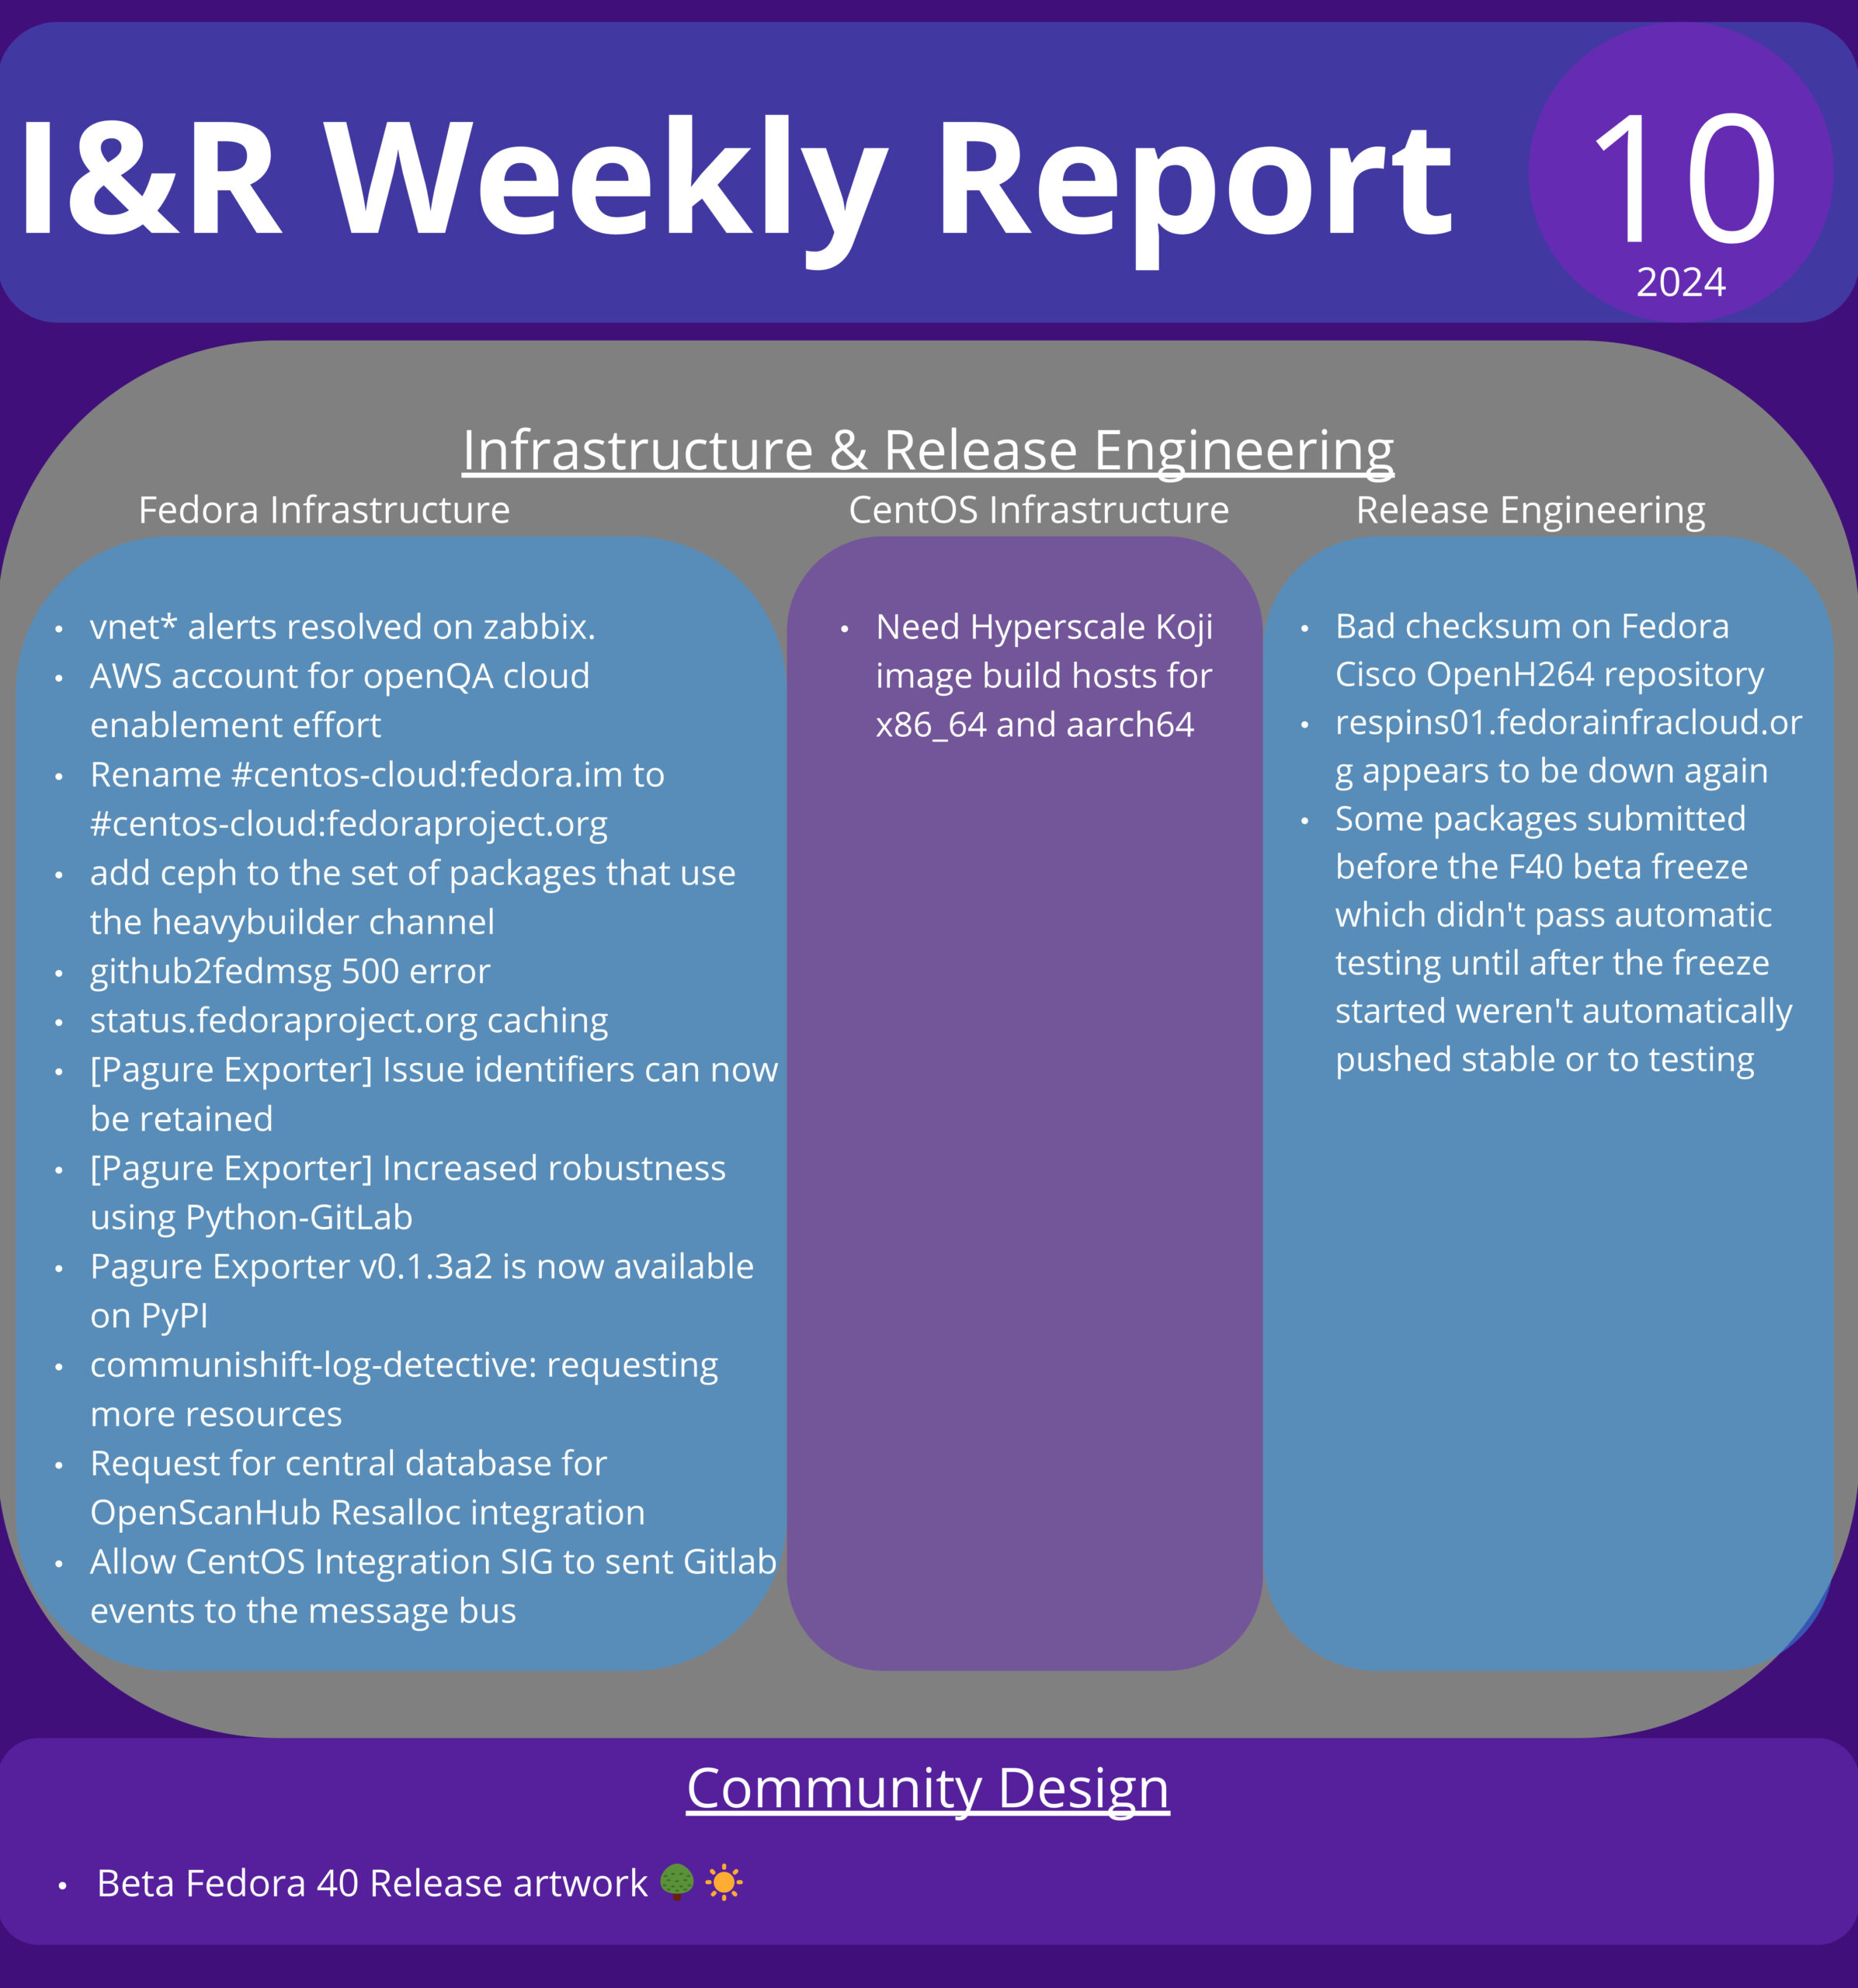 Infra&Releng infographic